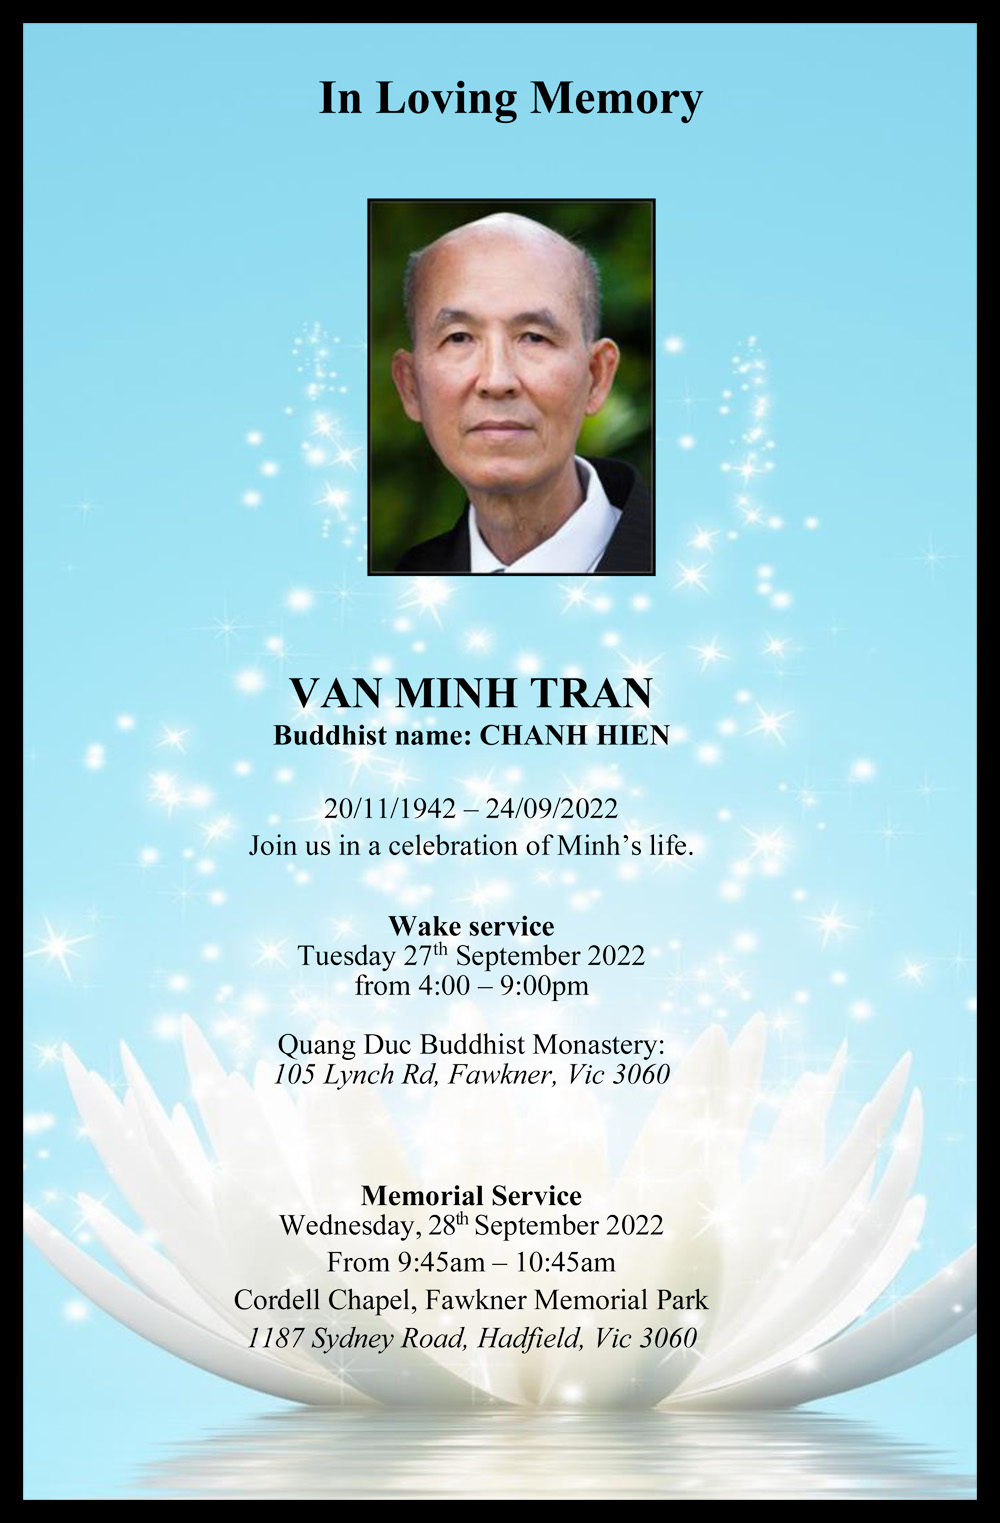 Tran Van Minh